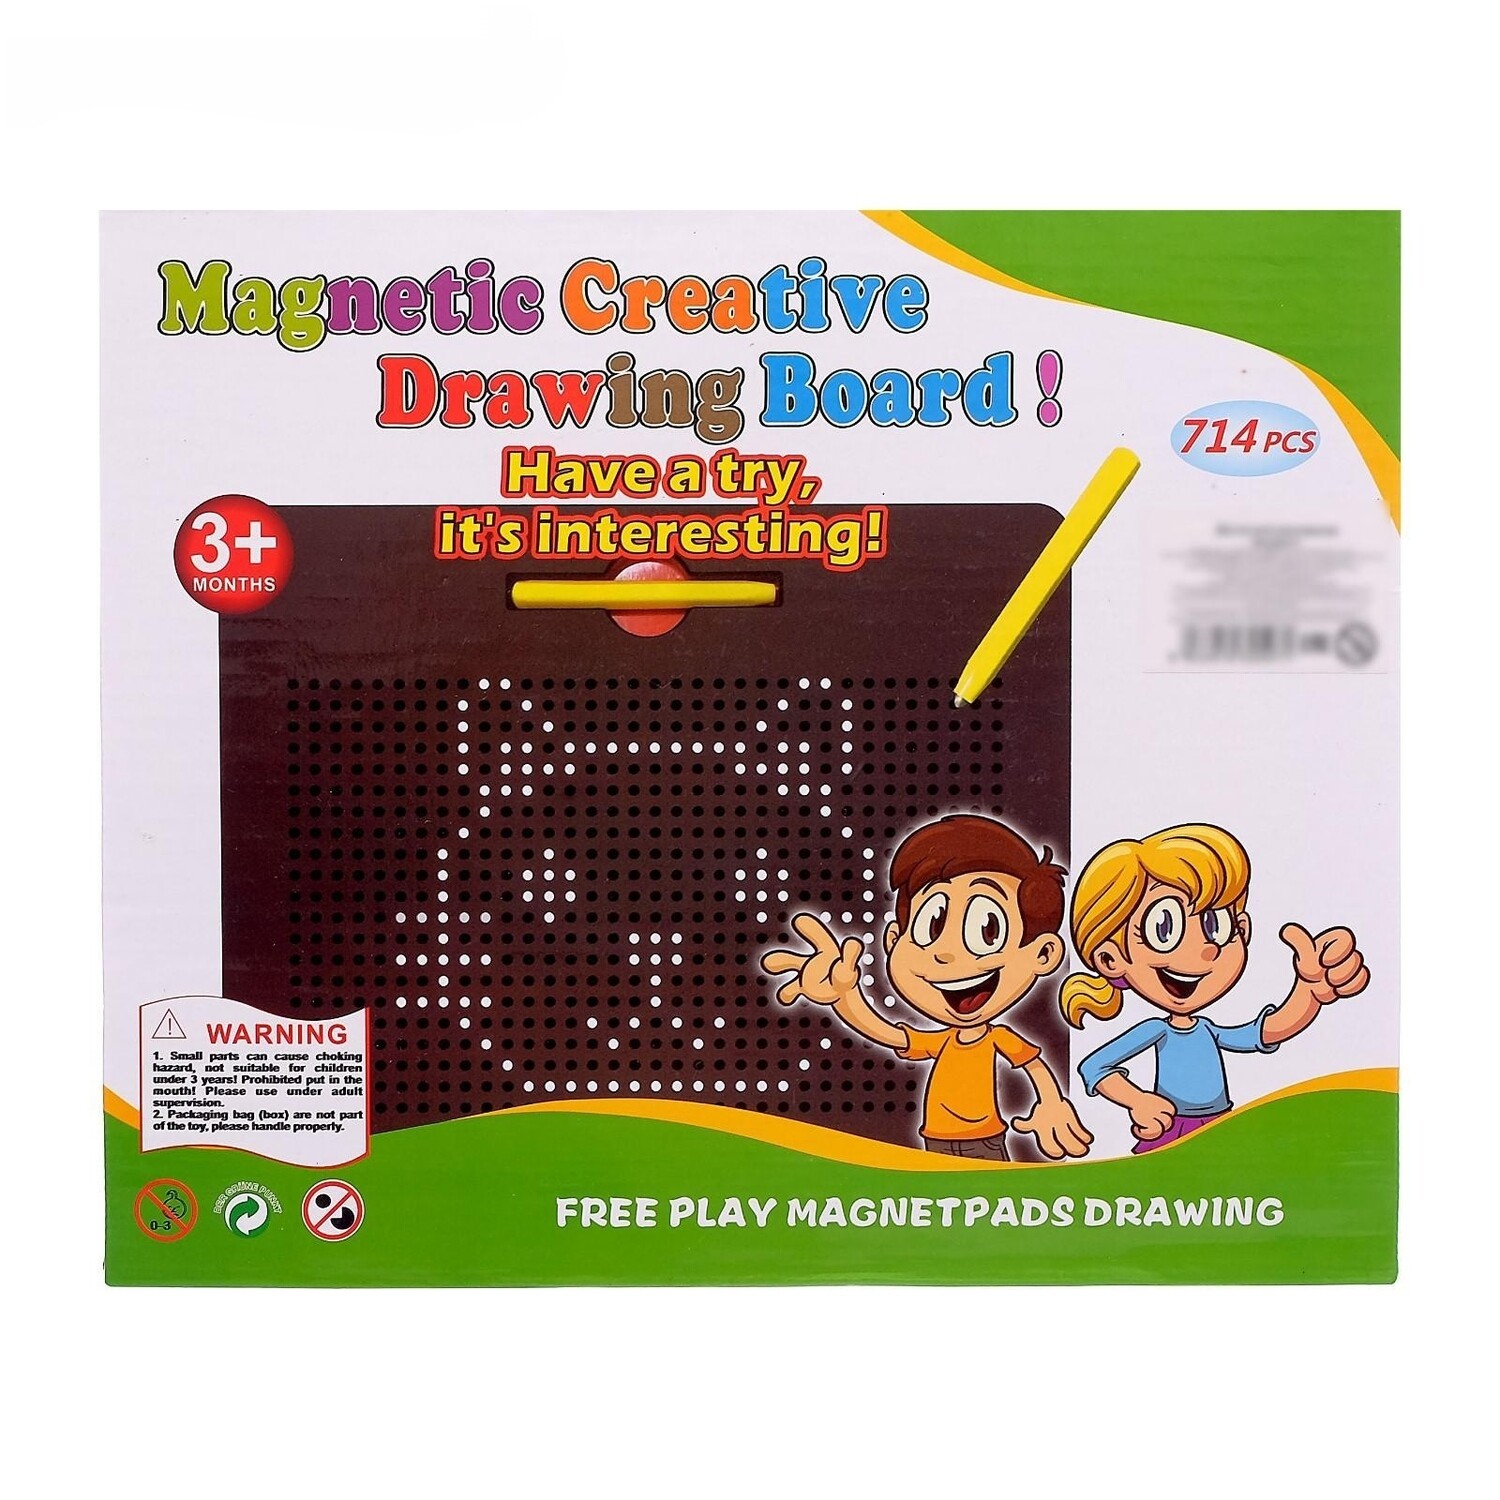 Магнитный планшет для рисования, обучающая магнитная доска "Magnetic Creative Drawing Board!" 714 шариков